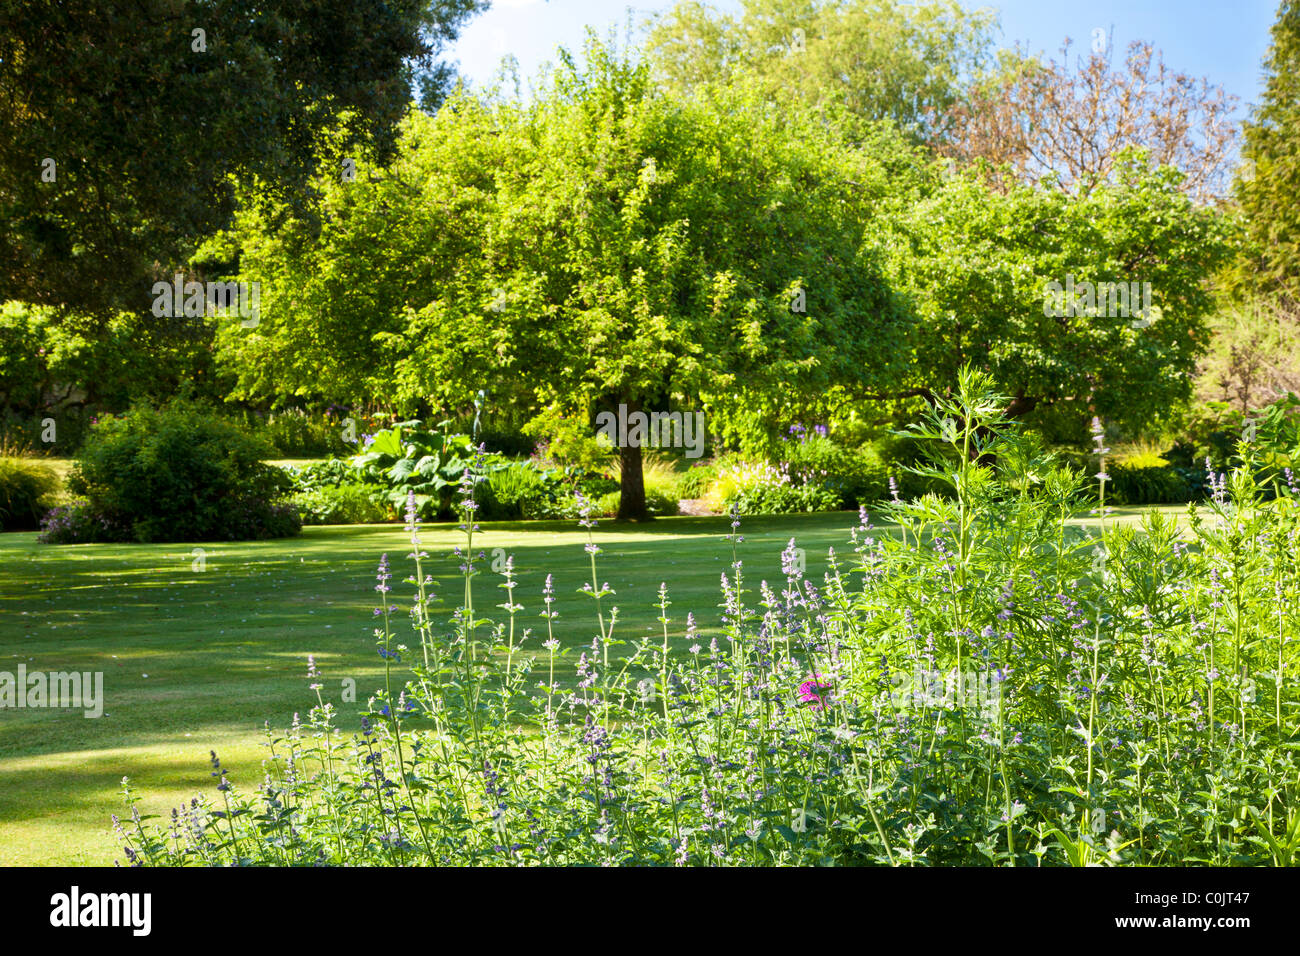 La pelouse d'un jardin de campagne anglaise, entouré d'arbres, arbustes, fleurs et des frontières dans le Wiltshire, England, UK en été Banque D'Images